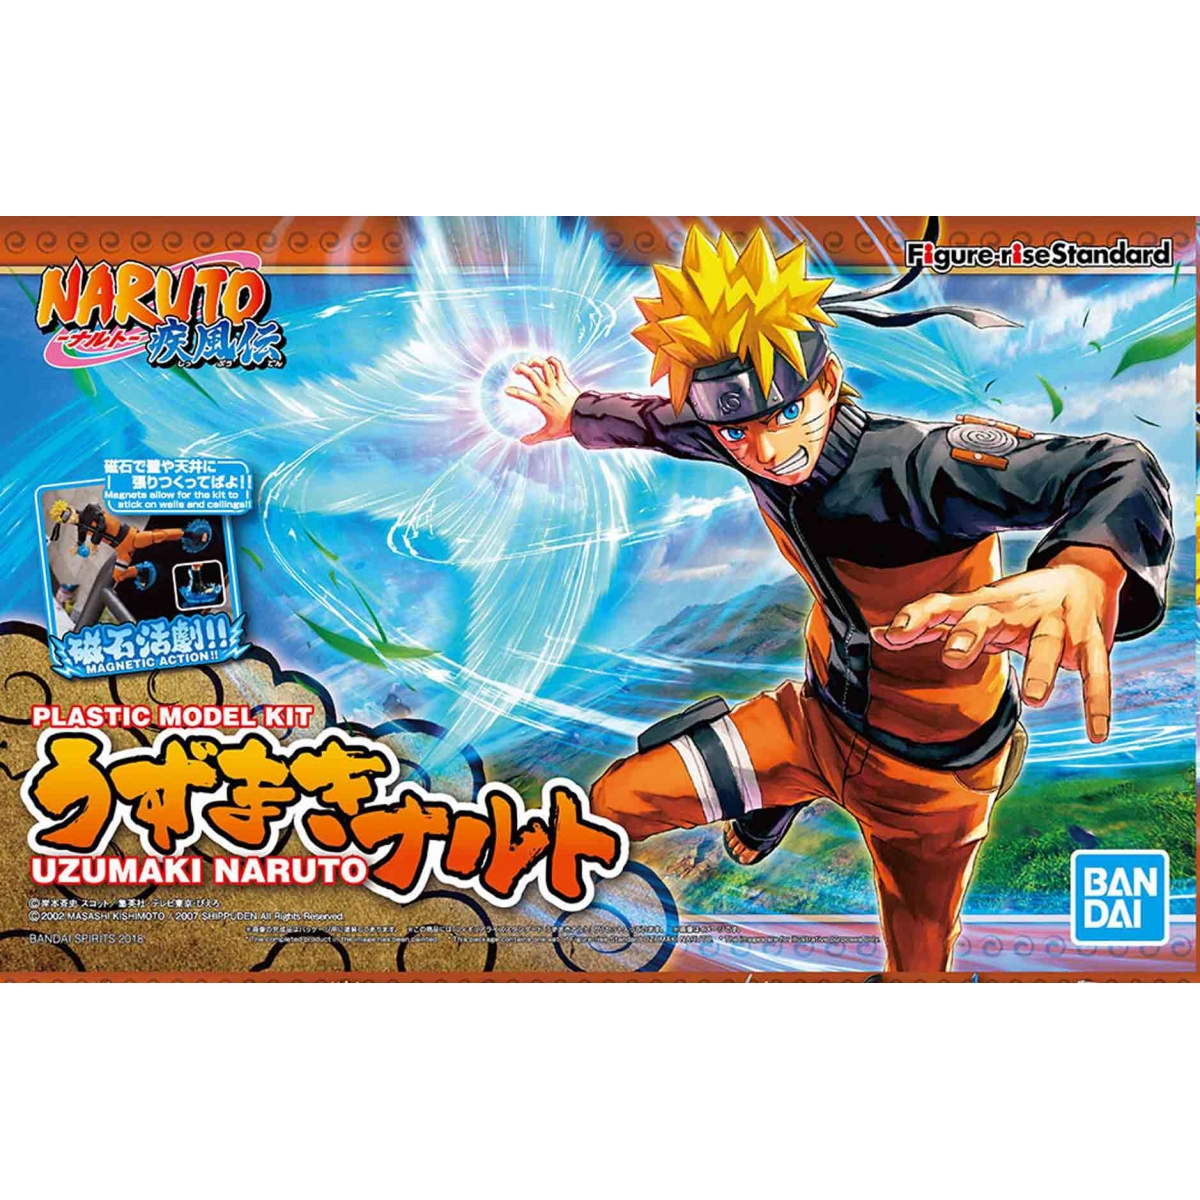 Naruto Uzumaki Figure Rise